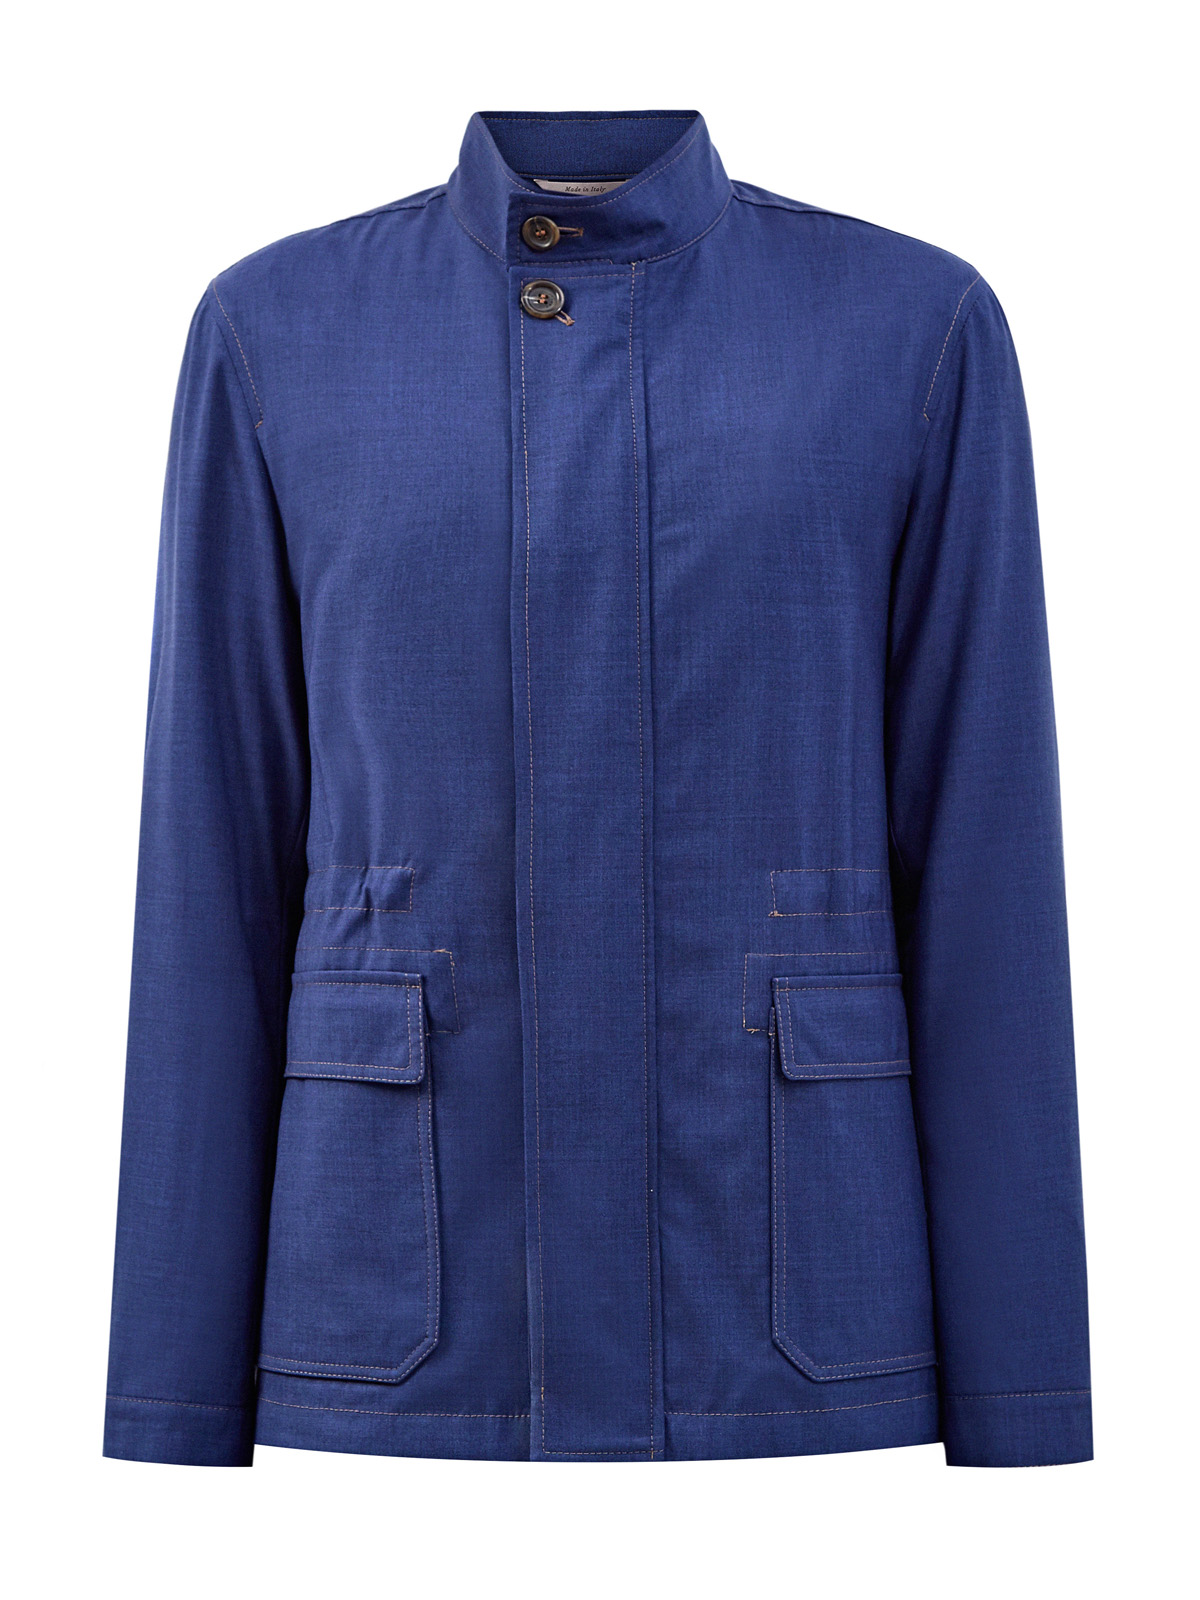 Куртка из тонкой шерстяной ткани с обработкой Impeccabile CANALI, цвет синий, размер 48;50;52;54;56;58;60